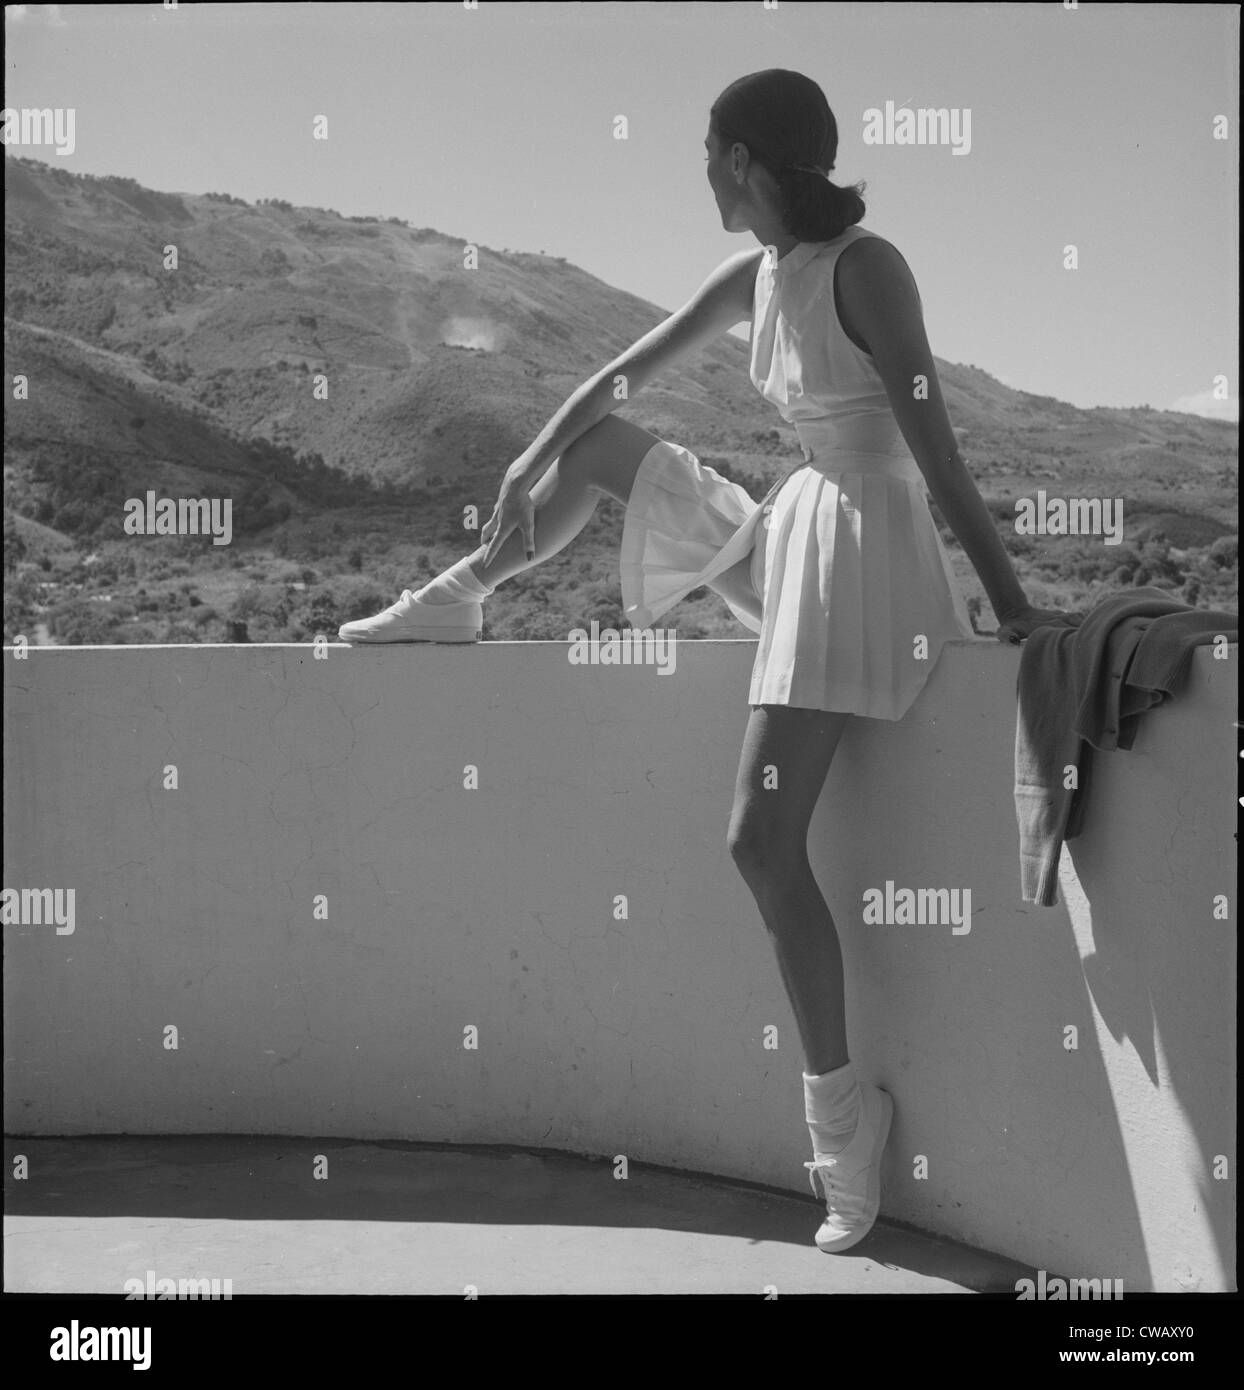 Frau trägt Tennis-Outfit, auf Wand, mit einem Bein auf Wand, sitzend mit Blick auf die Berge hinter ihr, Foto von Stockfoto